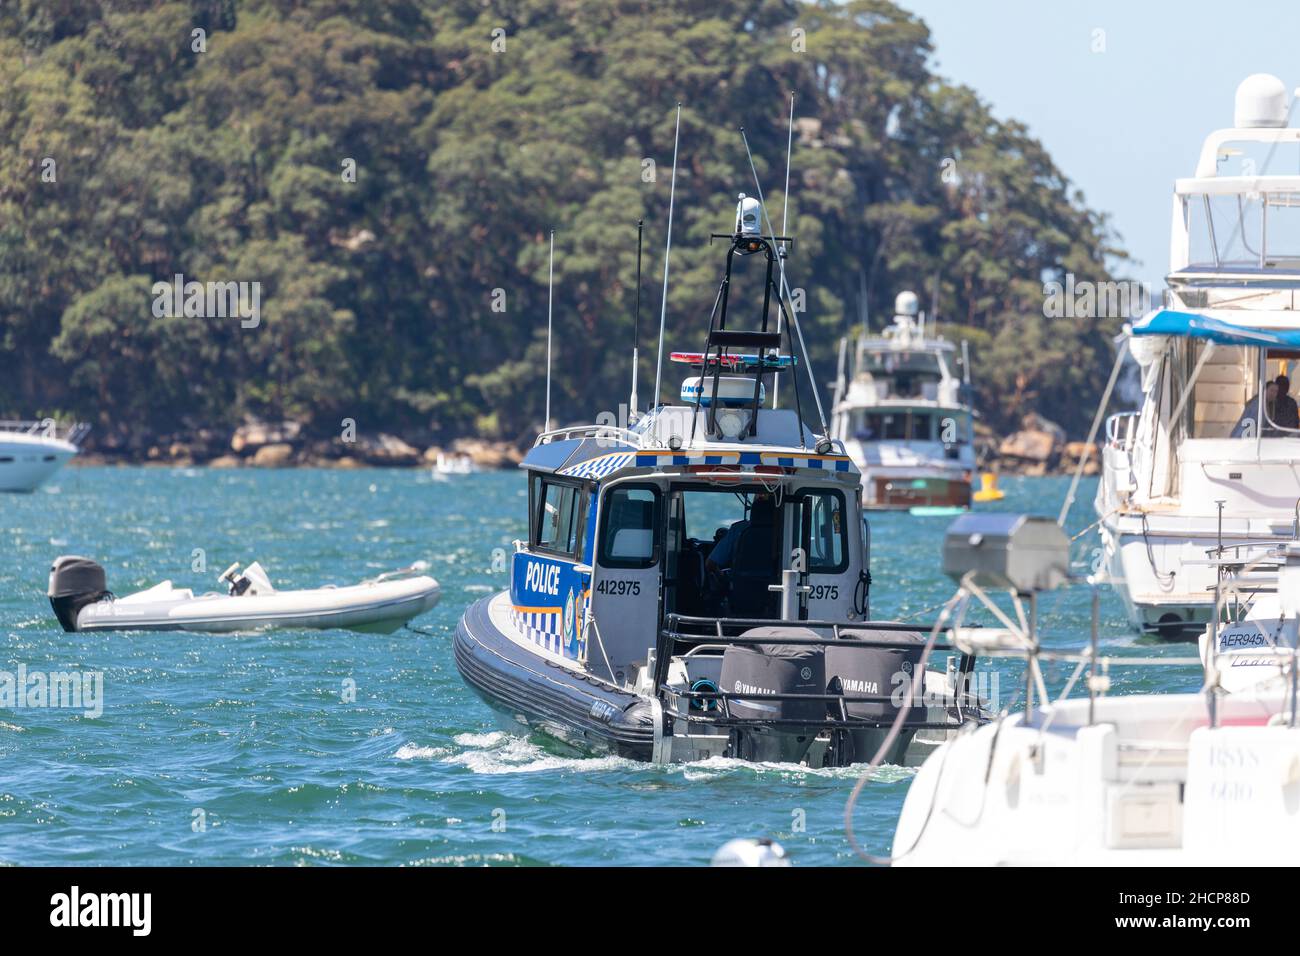 Police maritime de NSW la police patrouille les eaux de Pittwater sur leur bateau pendant les vacances d'été,Sydney,NSW,Australie Banque D'Images